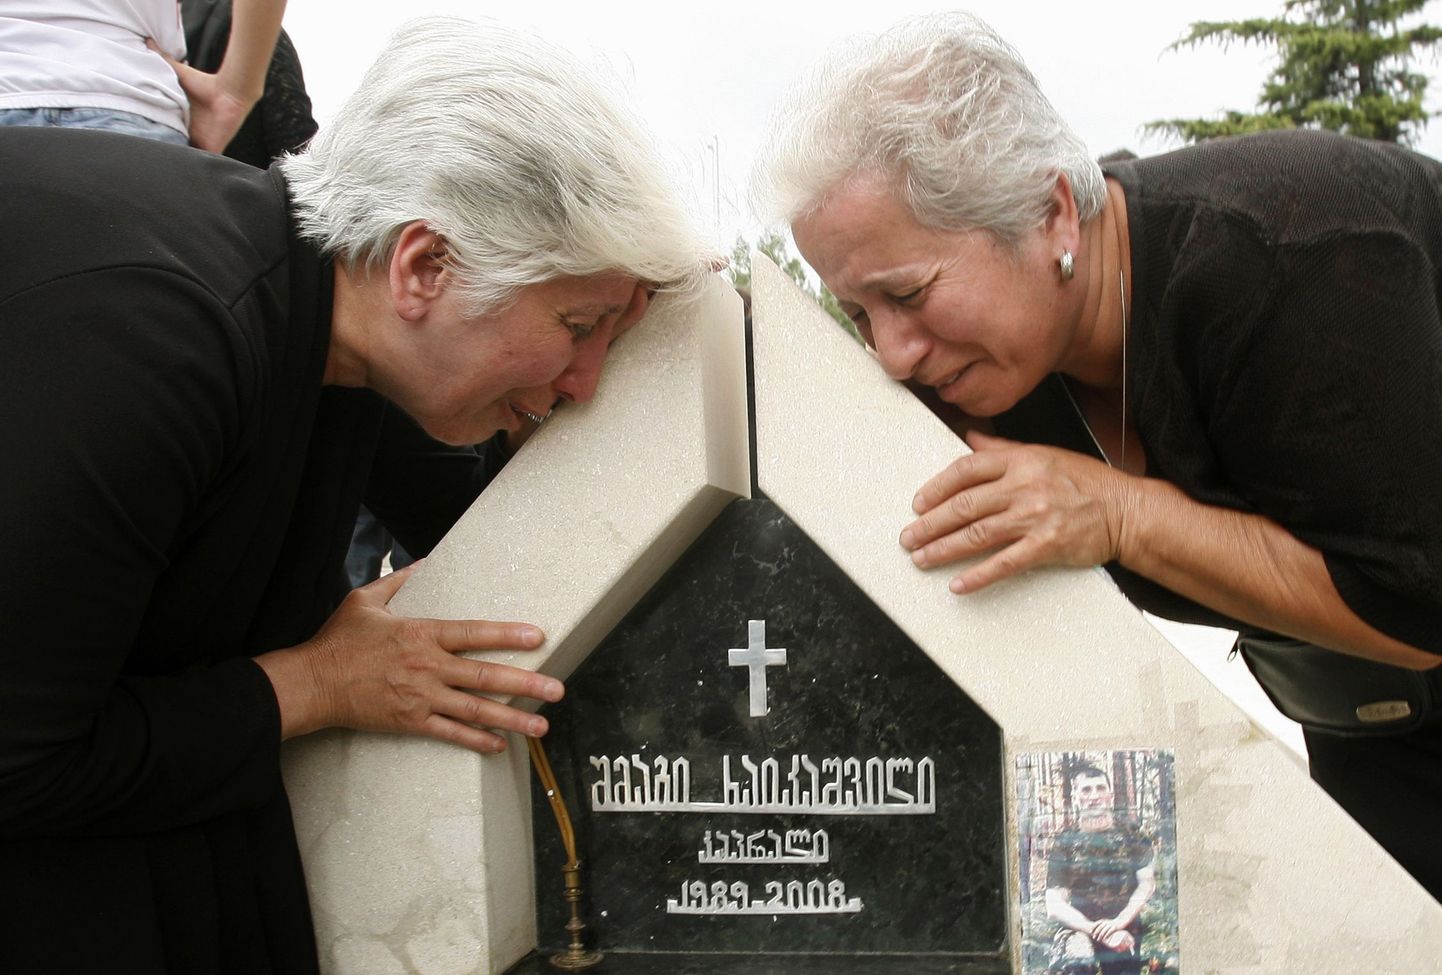 Pereliikmed eelmisel aastal Vene-Gruusia sõjas hukkunud noore mehe haual Gruusias.